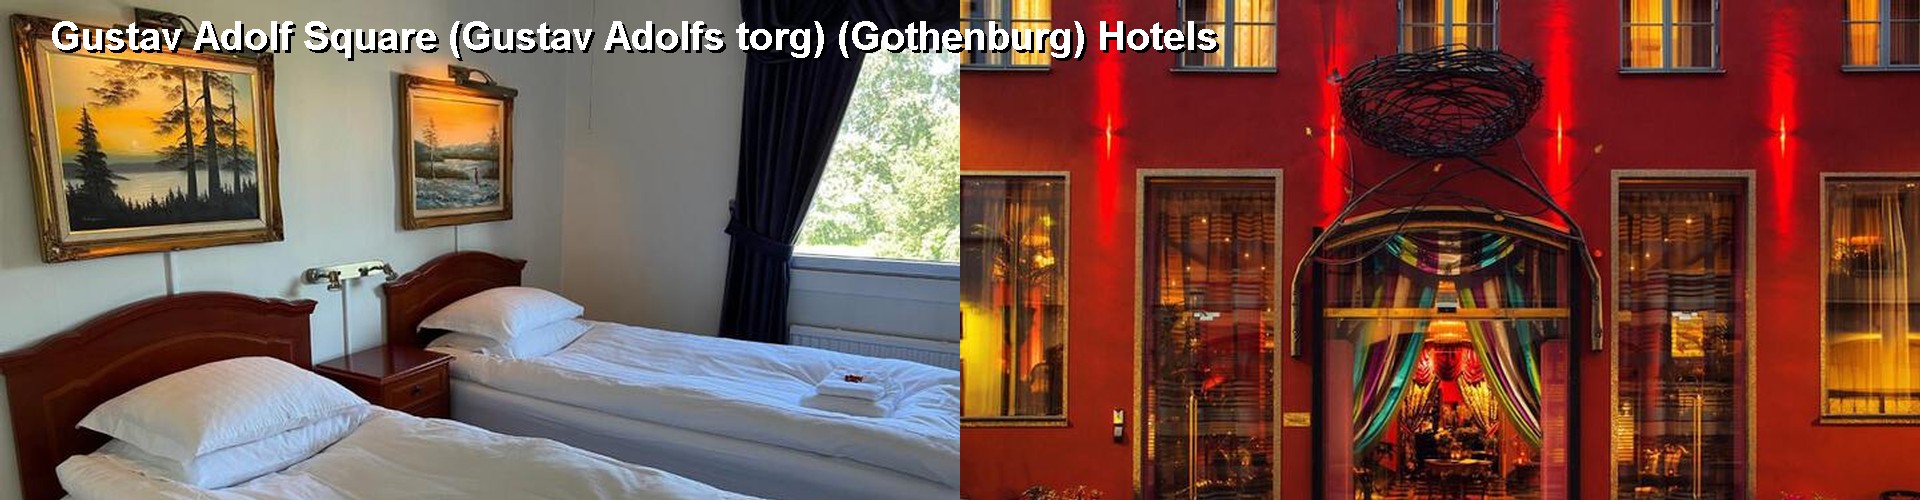 5 Best Hotels near Gustav Adolf Square (Gustav Adolfs torg) (Gothenburg)